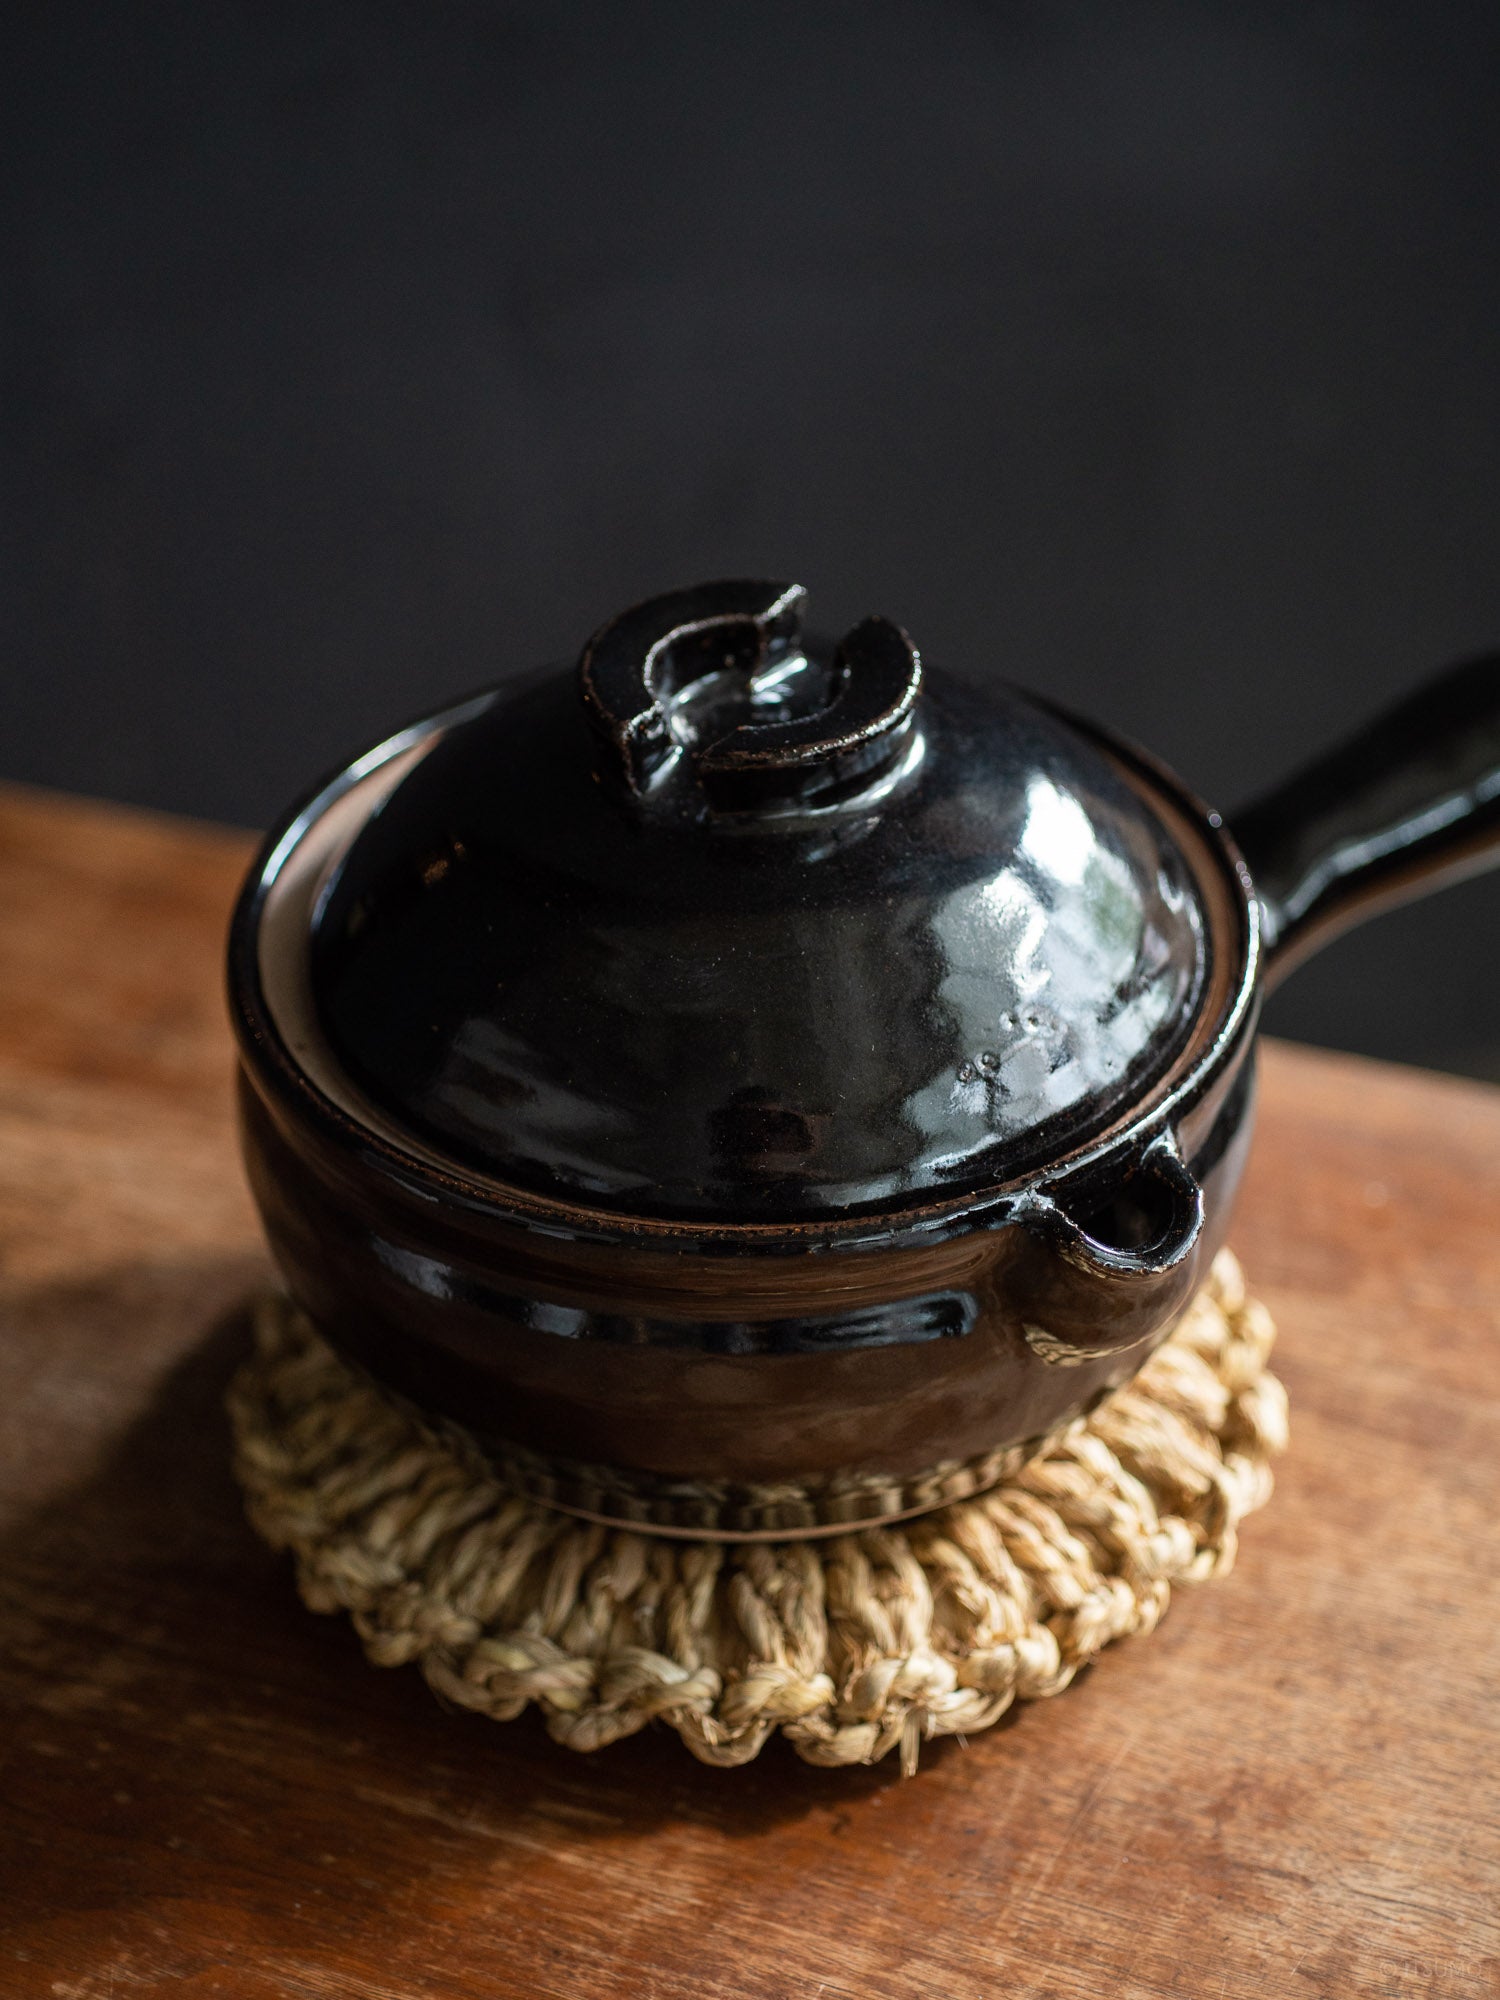 Azmaya's iga yukihira pot in kuroame glaze, handmade in Japan